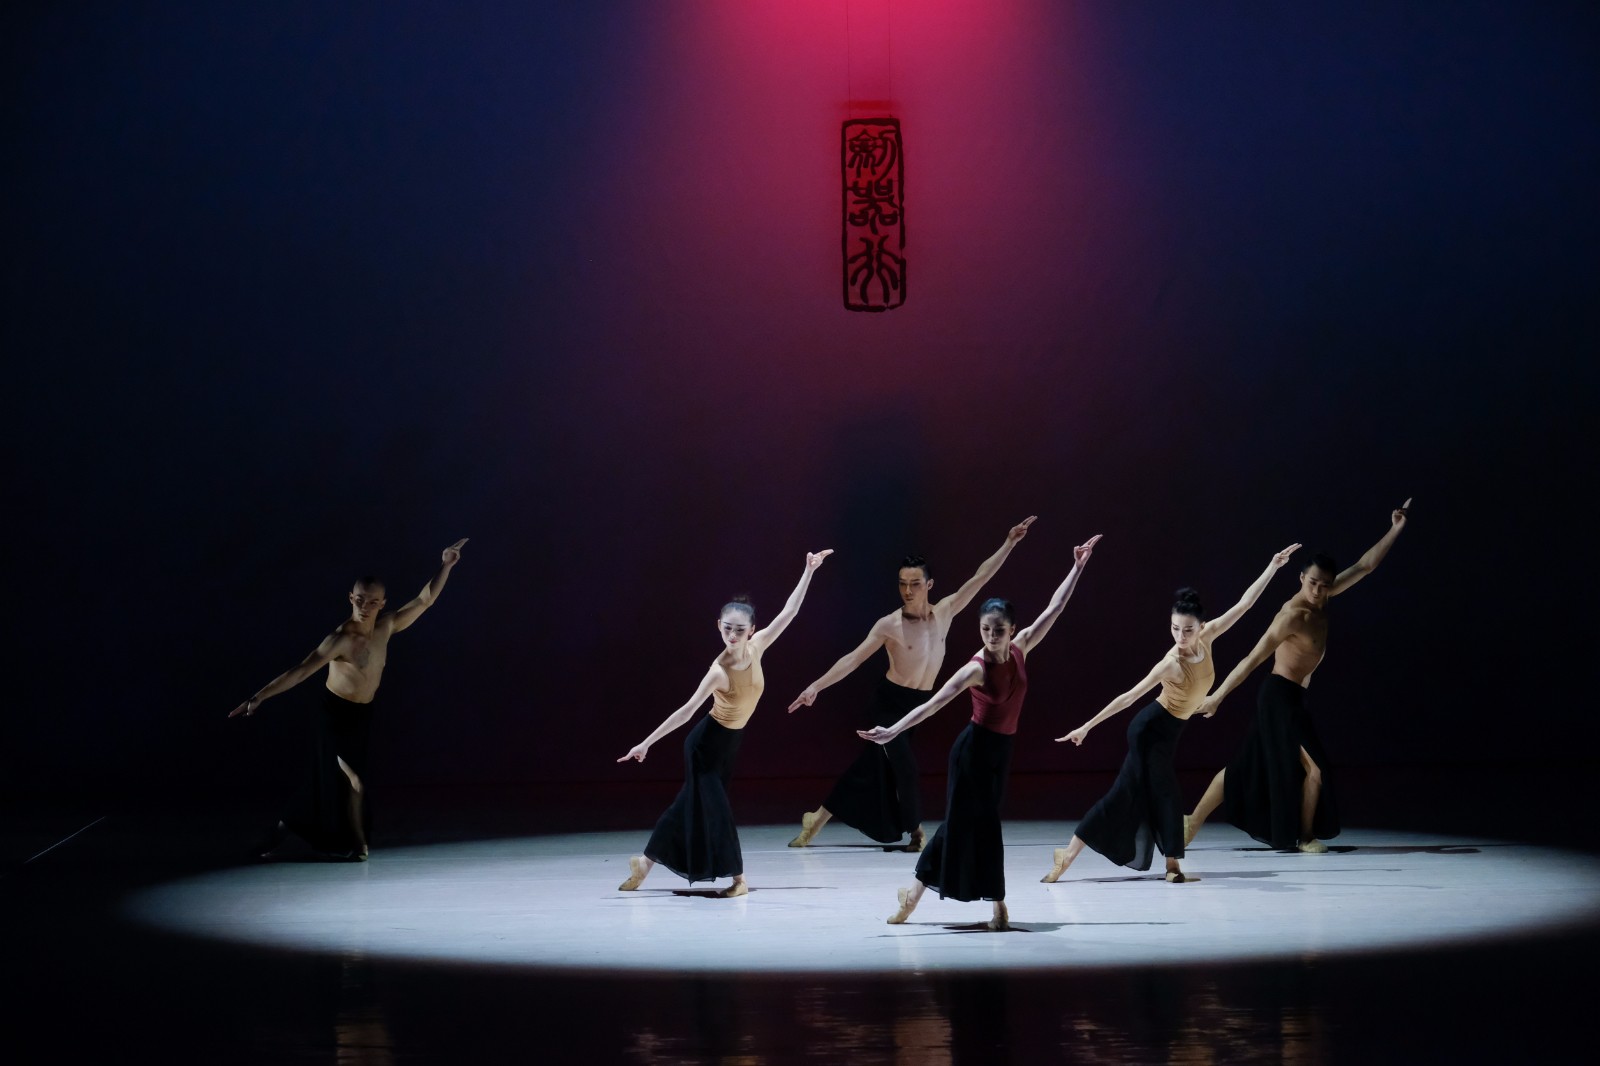 【上海国际艺术节校园行】《唐诗逸舞》,古典舞韵